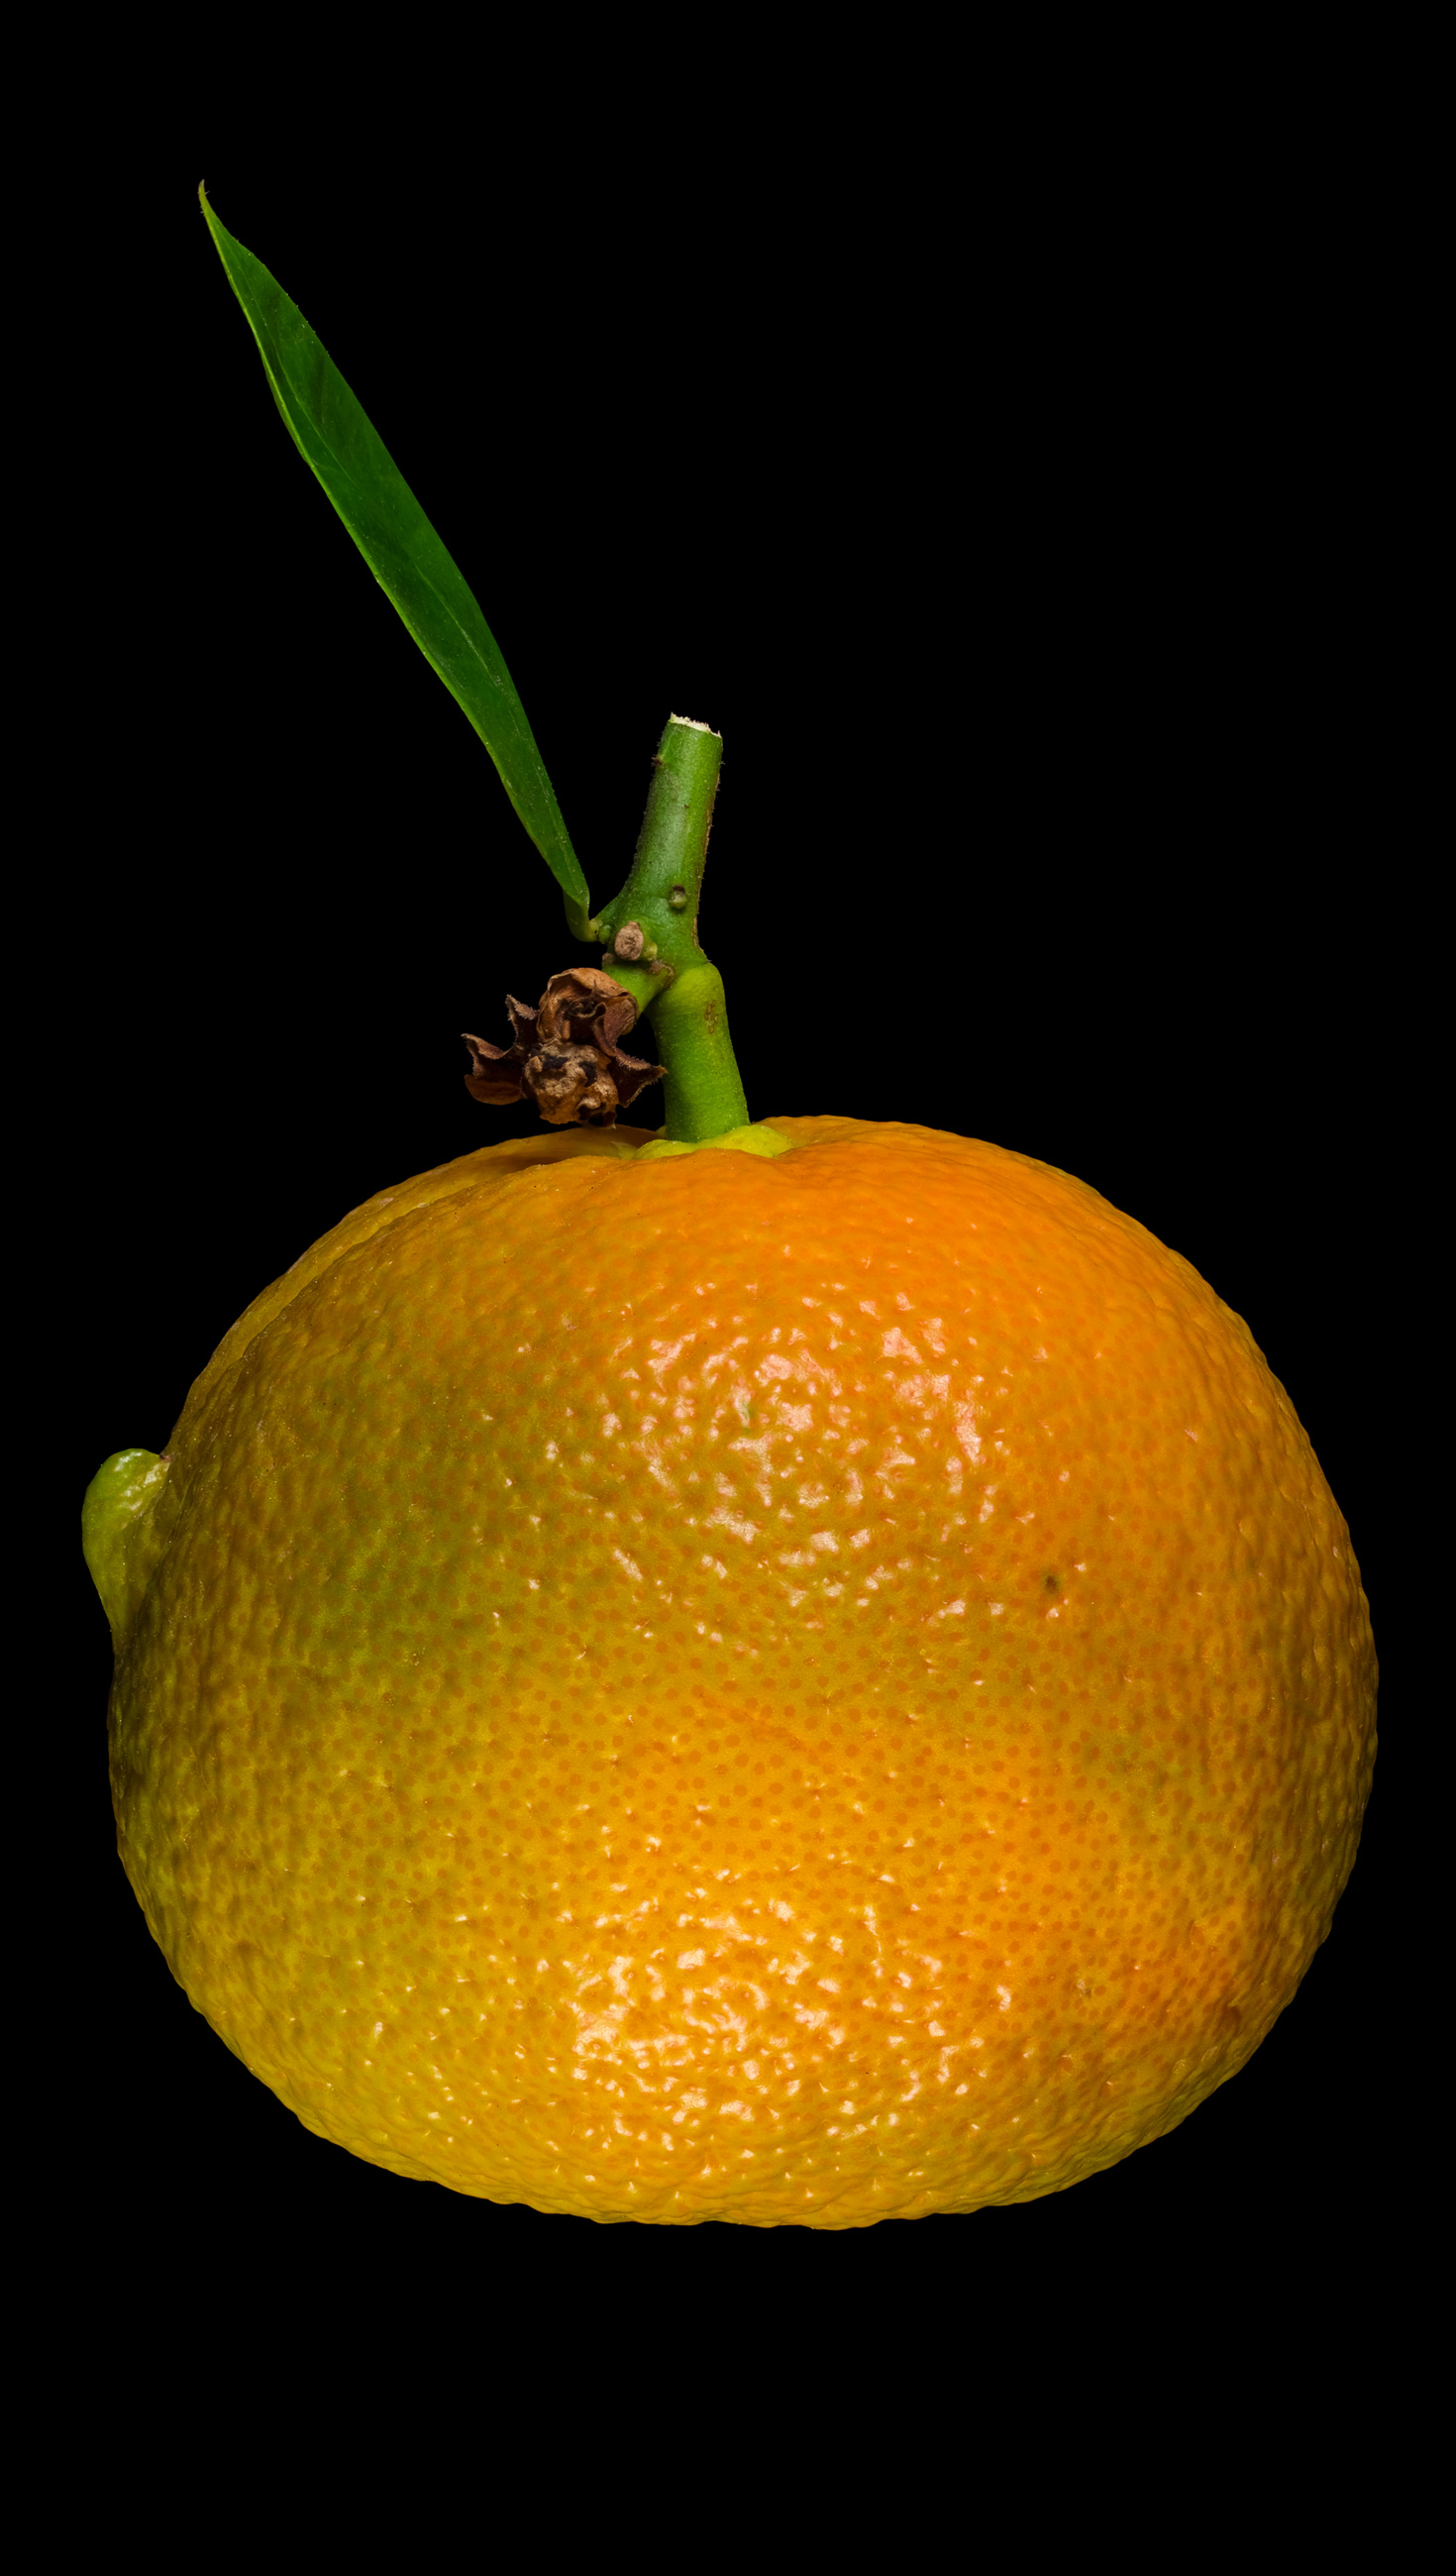 Horned bitter orange: Citrus × aurantium ‘Corniculata’